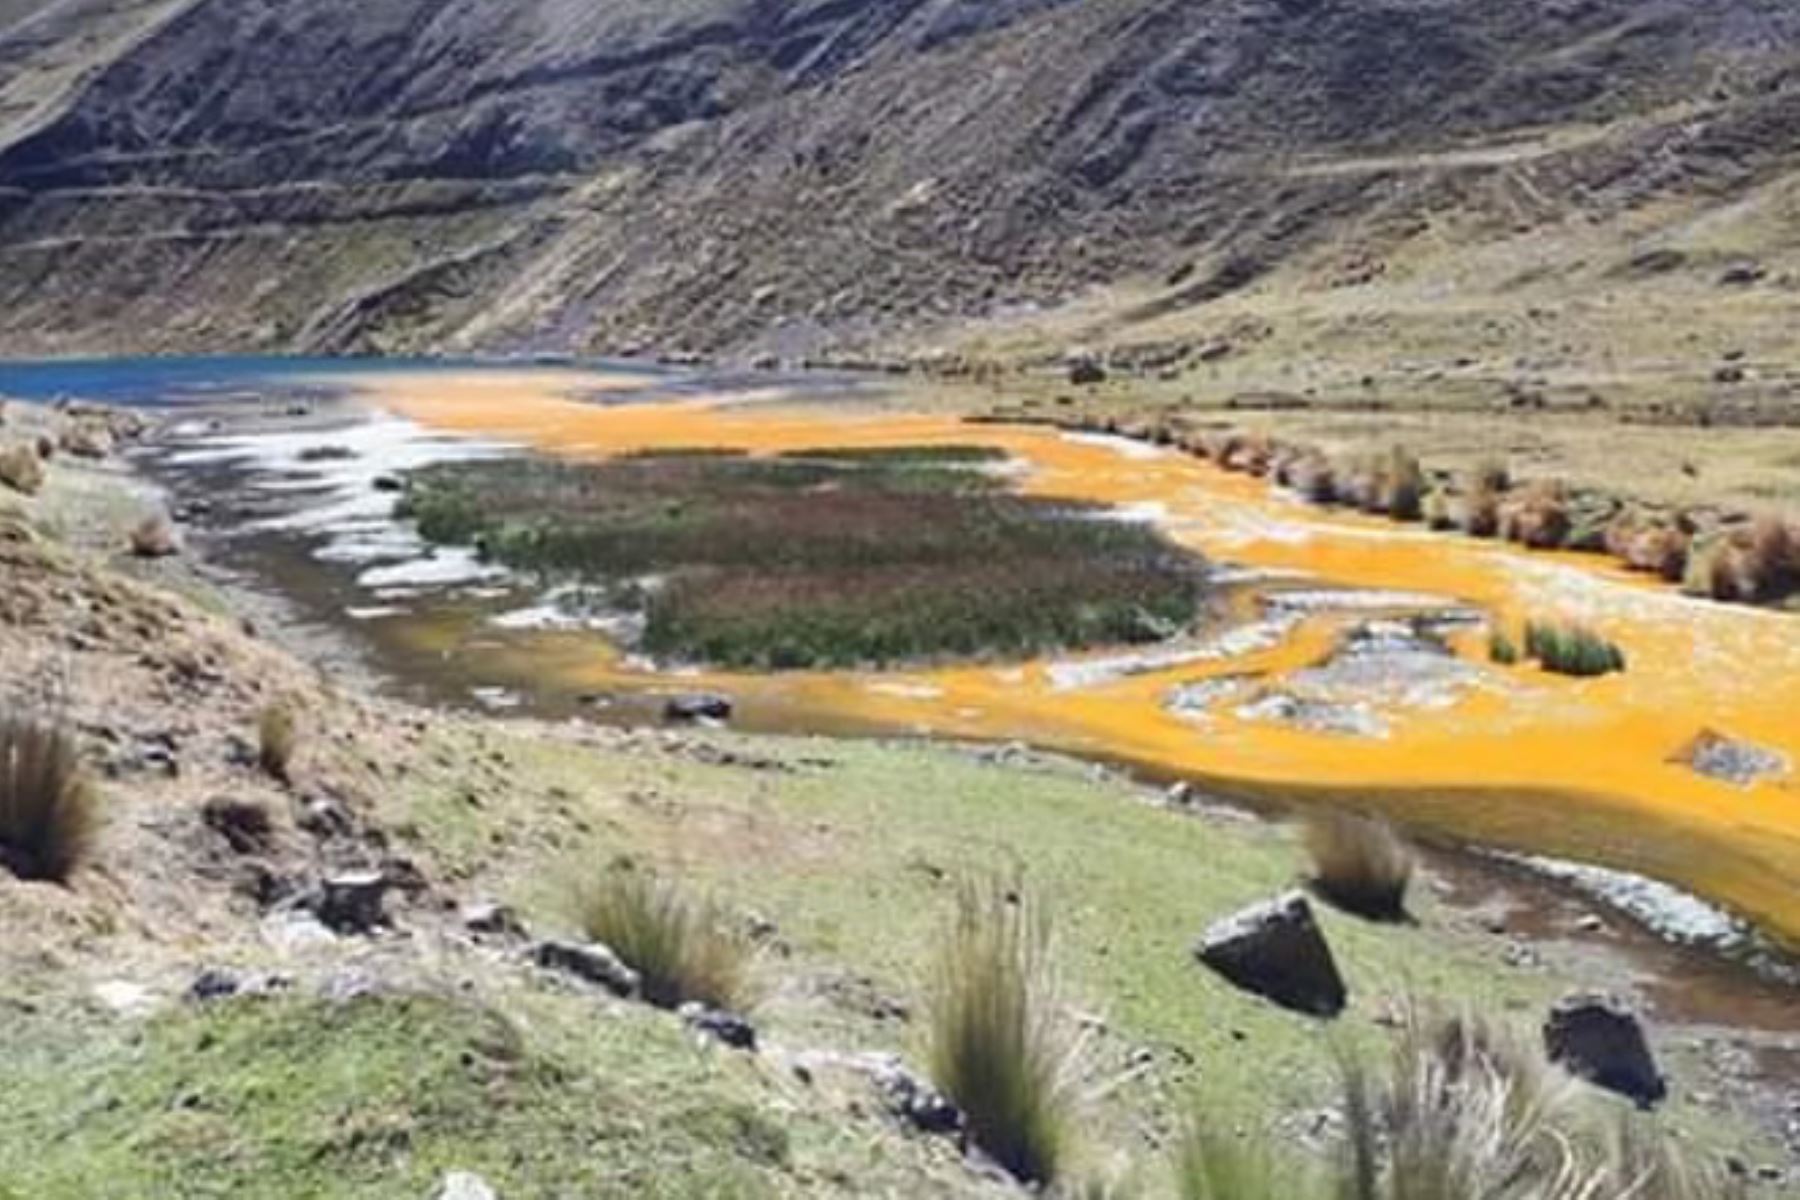 Rampas de empresa minera en Pallasca (Áncash) colapsaron y podría ocasionar contaminación ambiental.